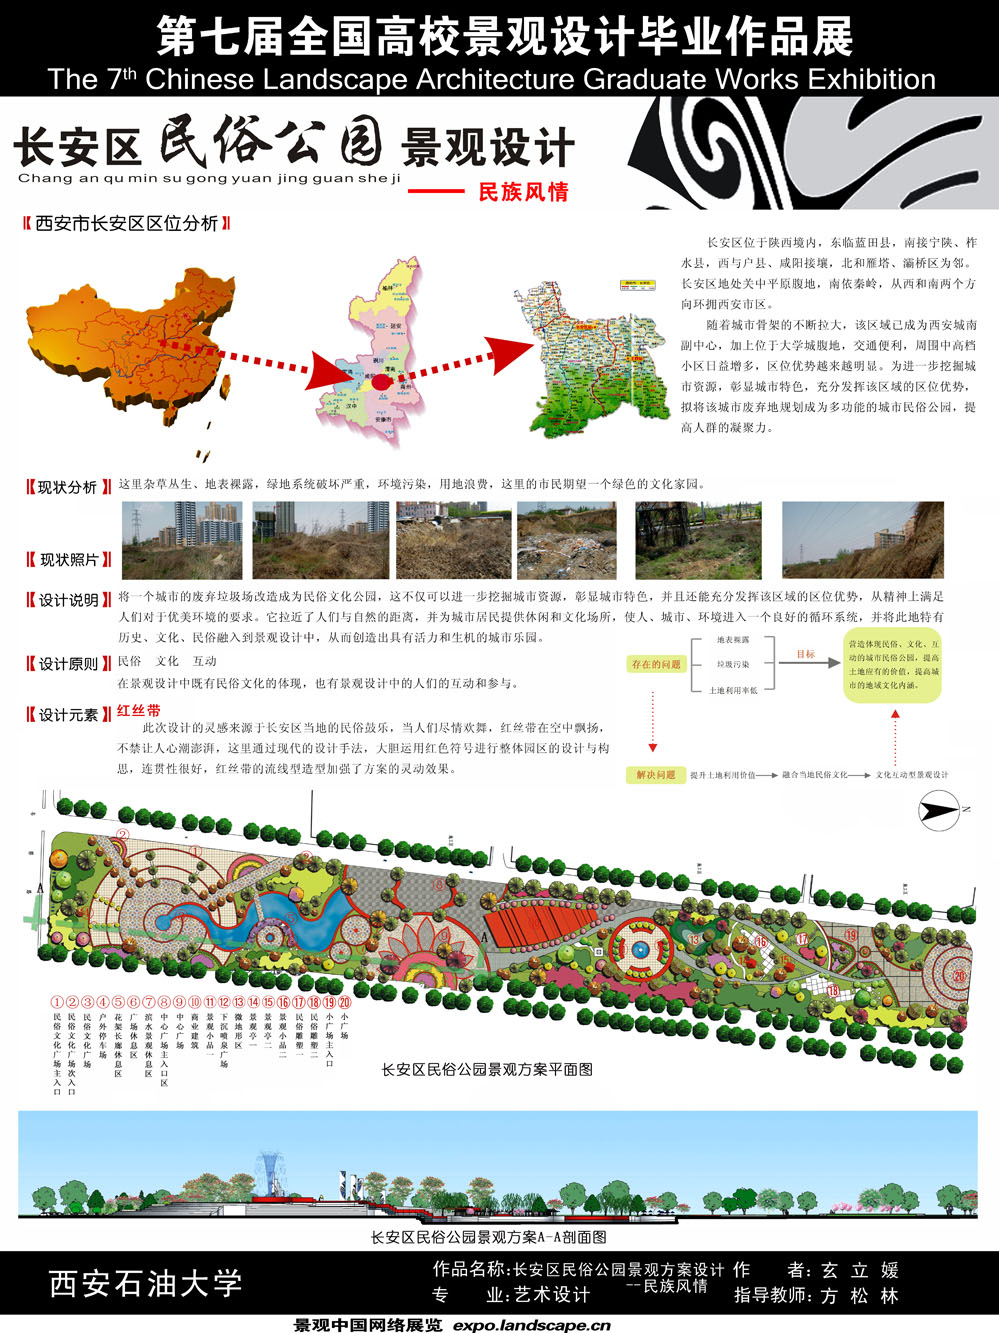 长安区民俗公园景观设计- 民族风情-1